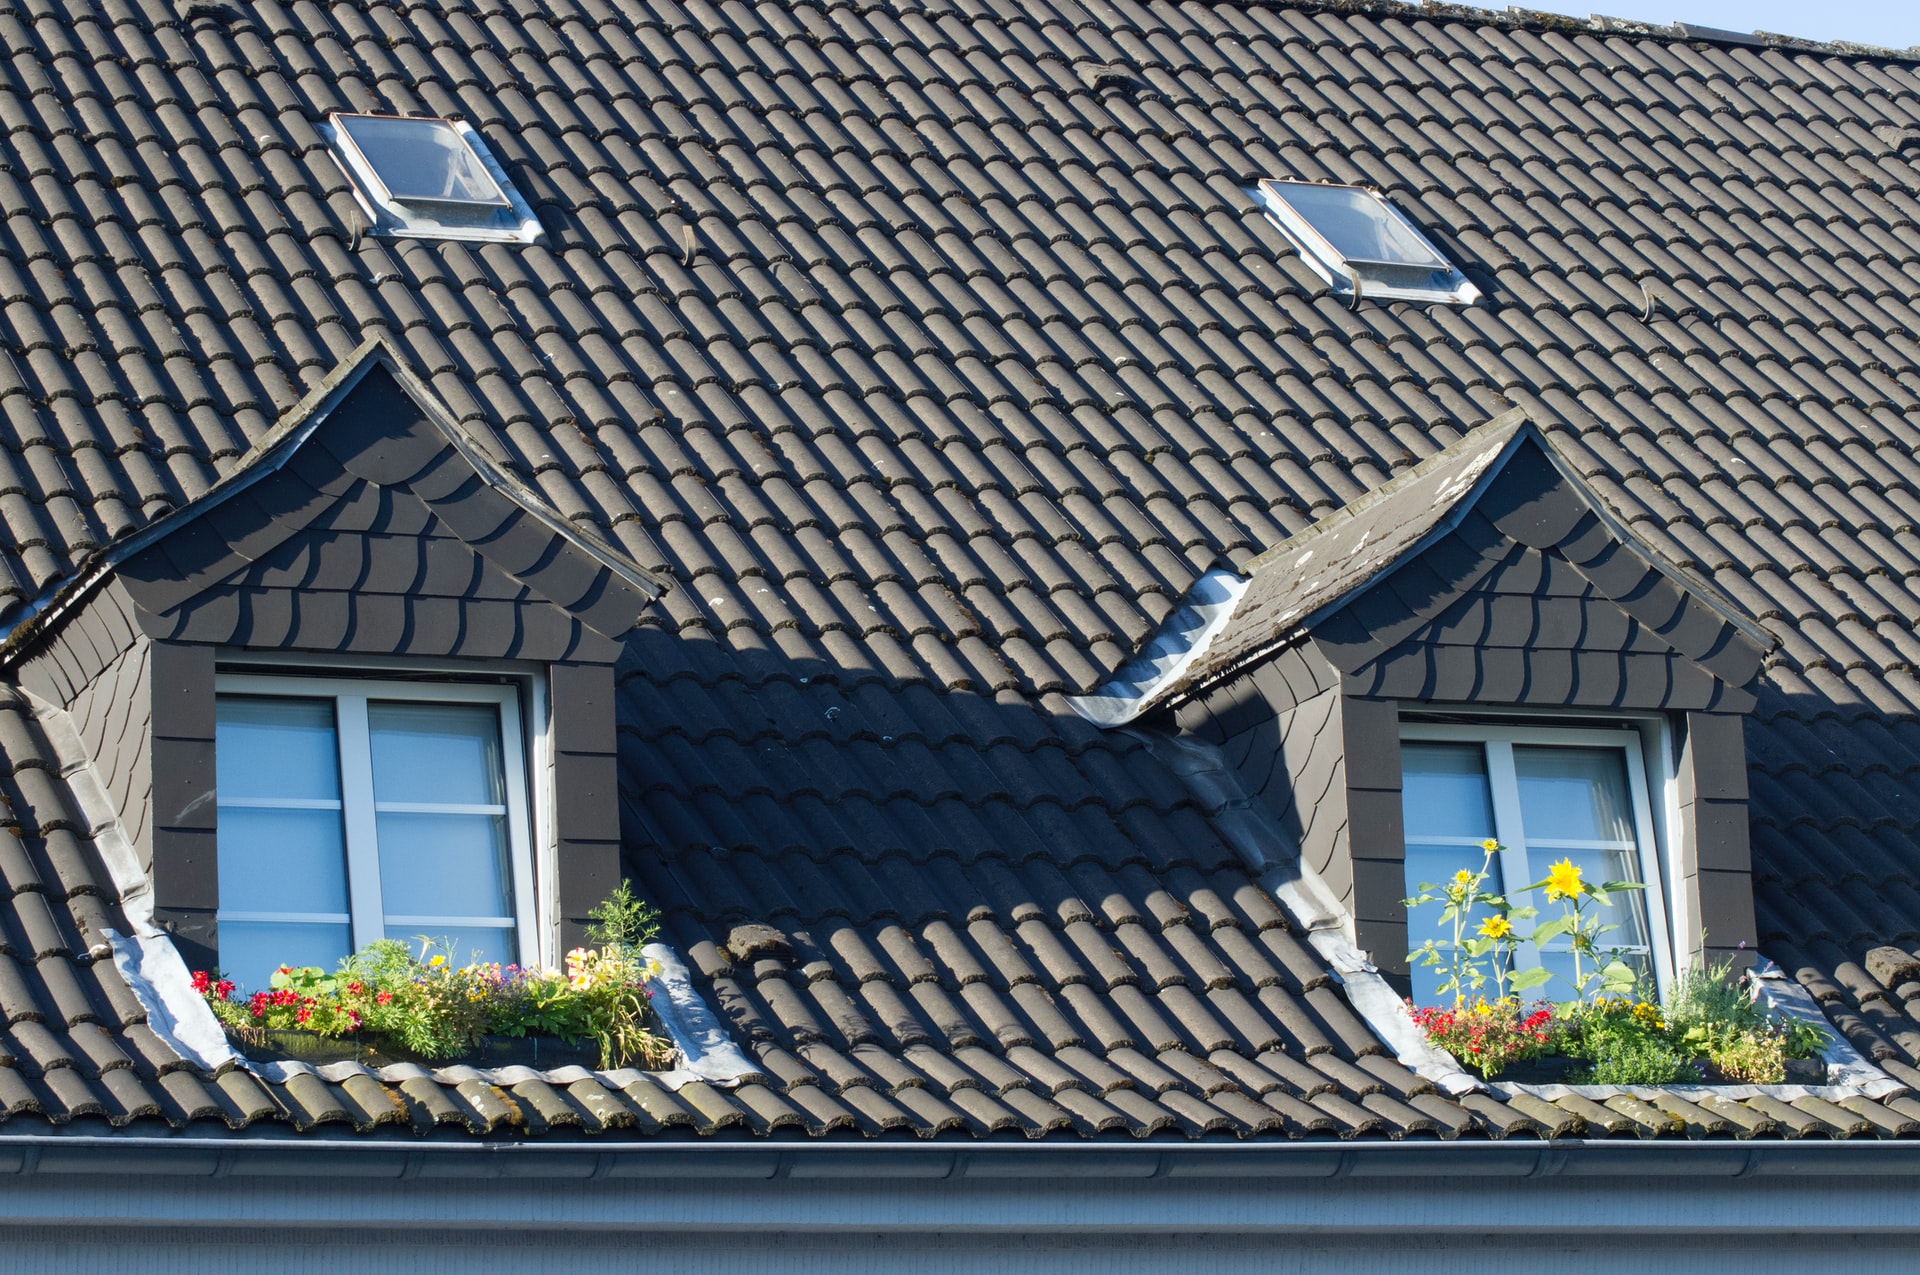 Komu przysługuje ulga termomodernizacyjna na wymianę okien dachowych?